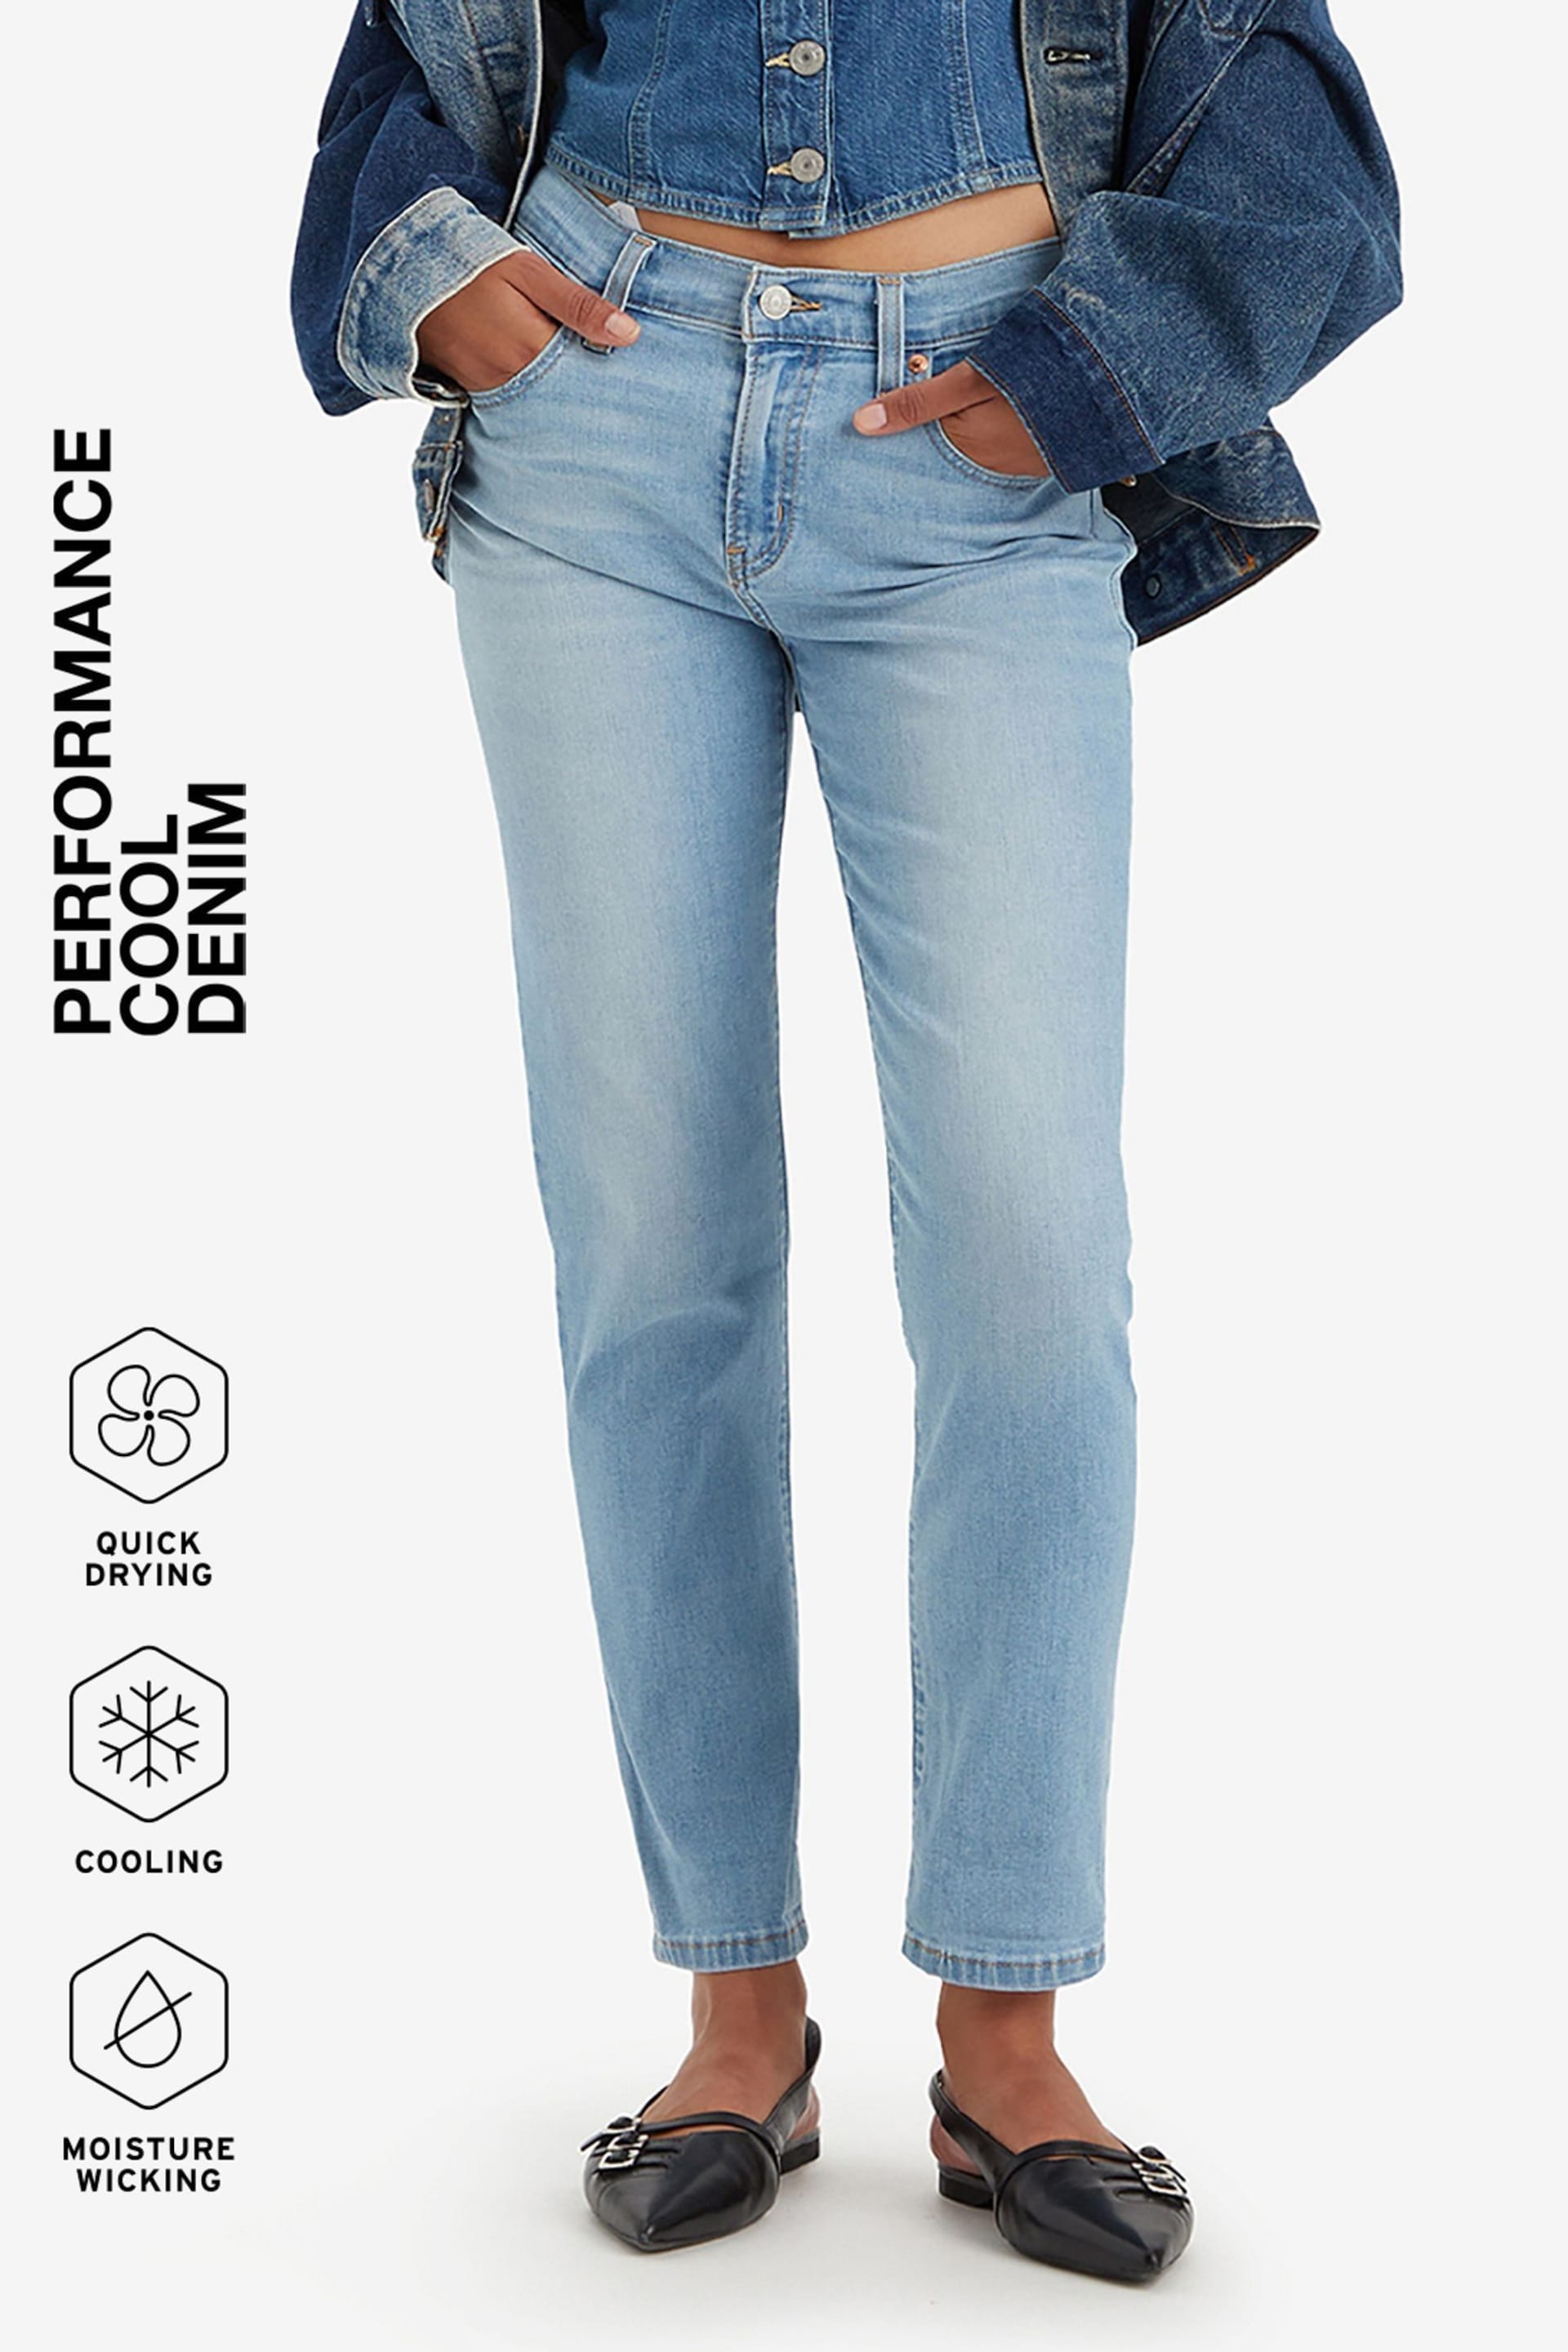 Levi's® Blue Mid Rise Boyfriend Jeans - Image 1 of 7